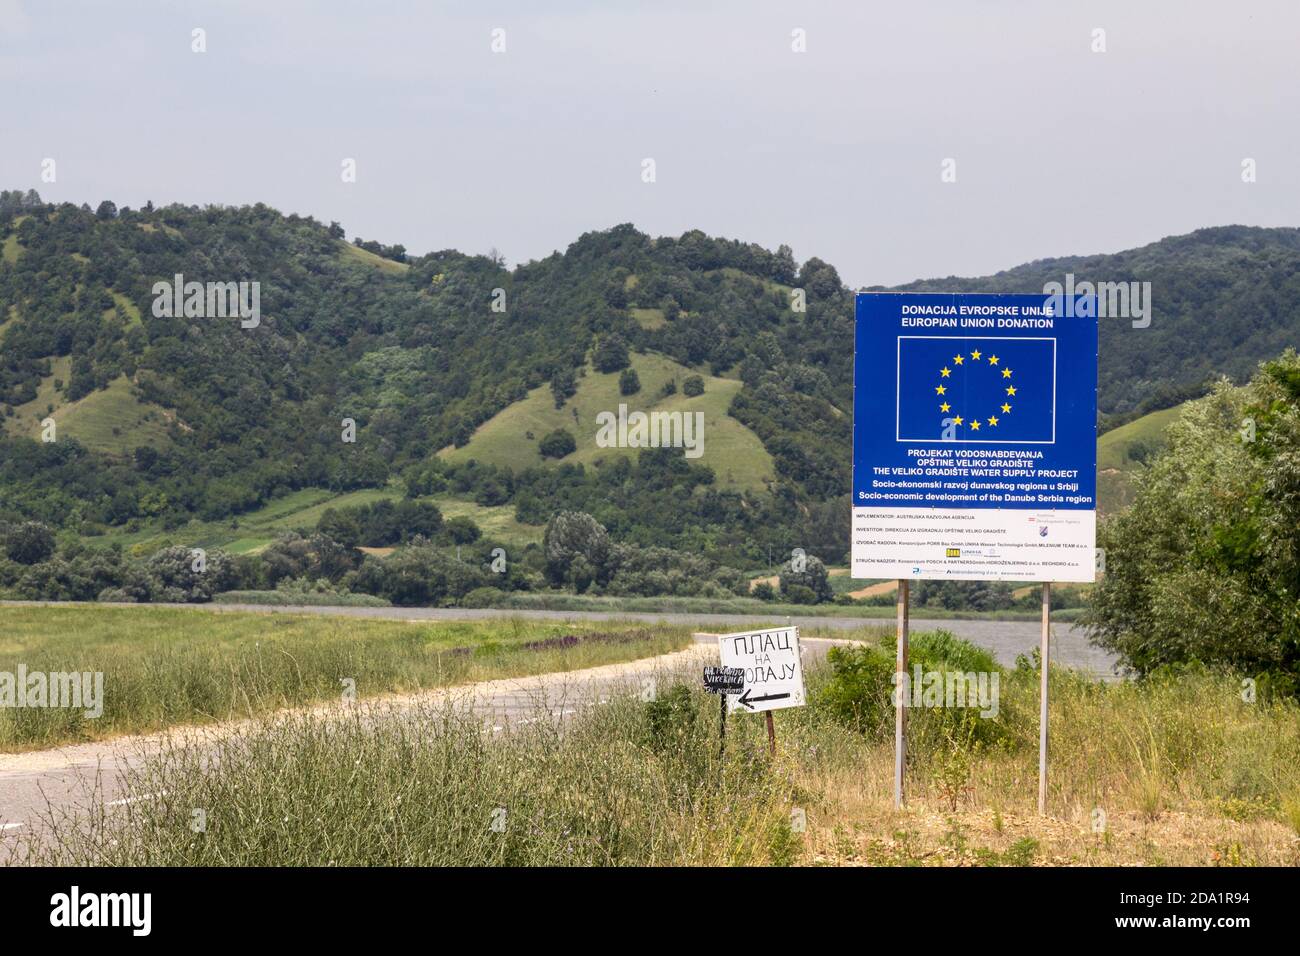 VELIKO GRADISTE, SERBIA - 26 GIUGNO 2016: Segnale stradale per la promozione di un progetto di ricostruzione finanziato dall'Unione europea in Serbia. L'Unione europea è una delle principali Foto Stock